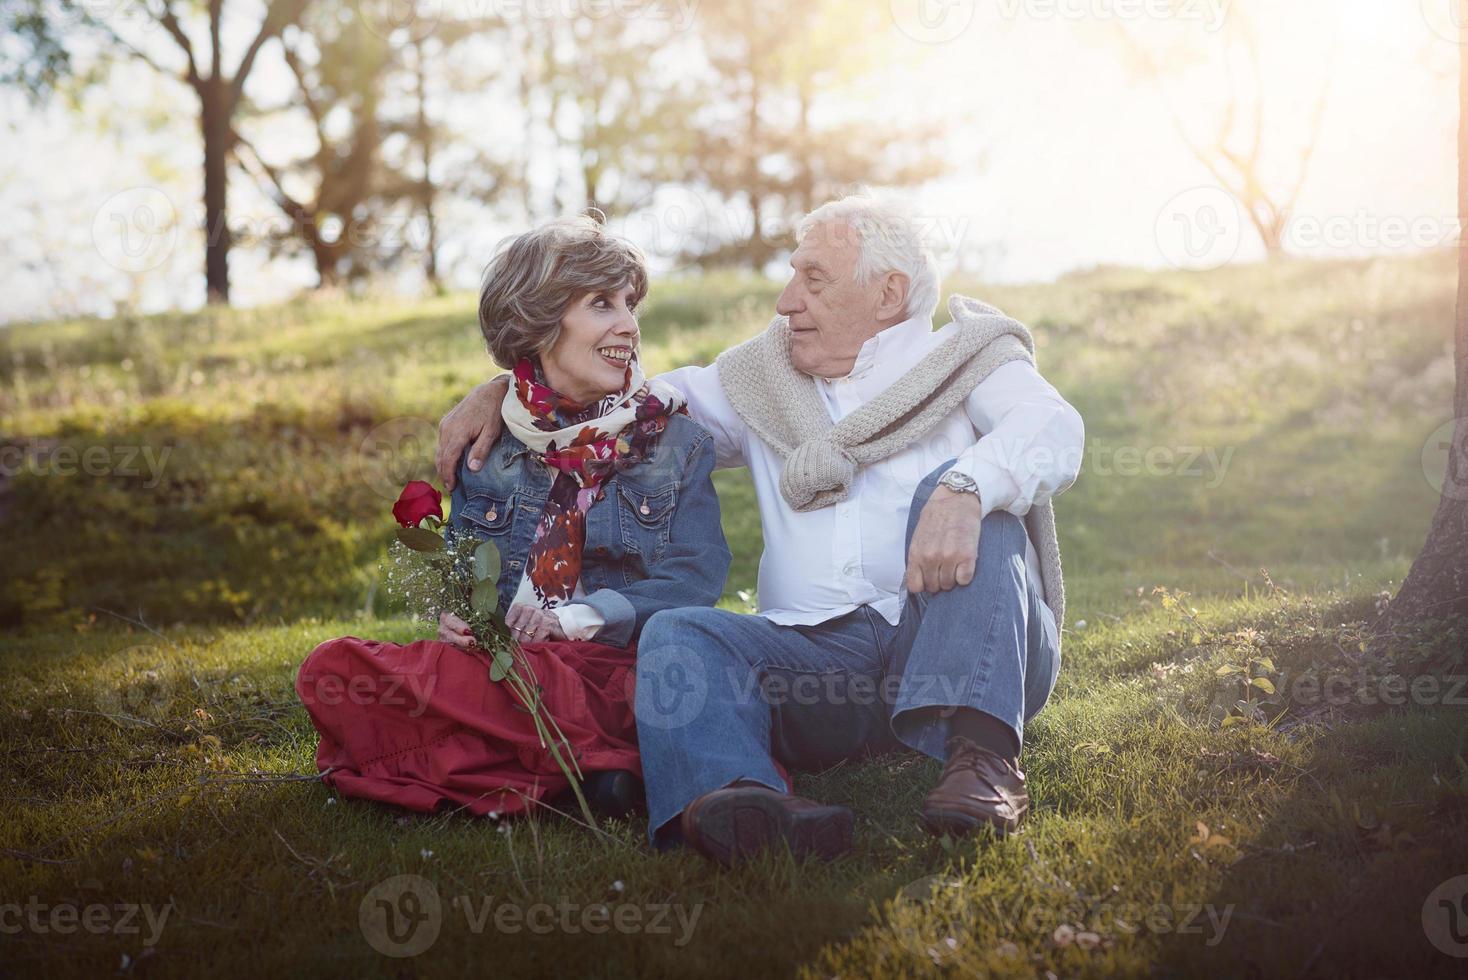 portrait de couple de personnes âgées romantique photo